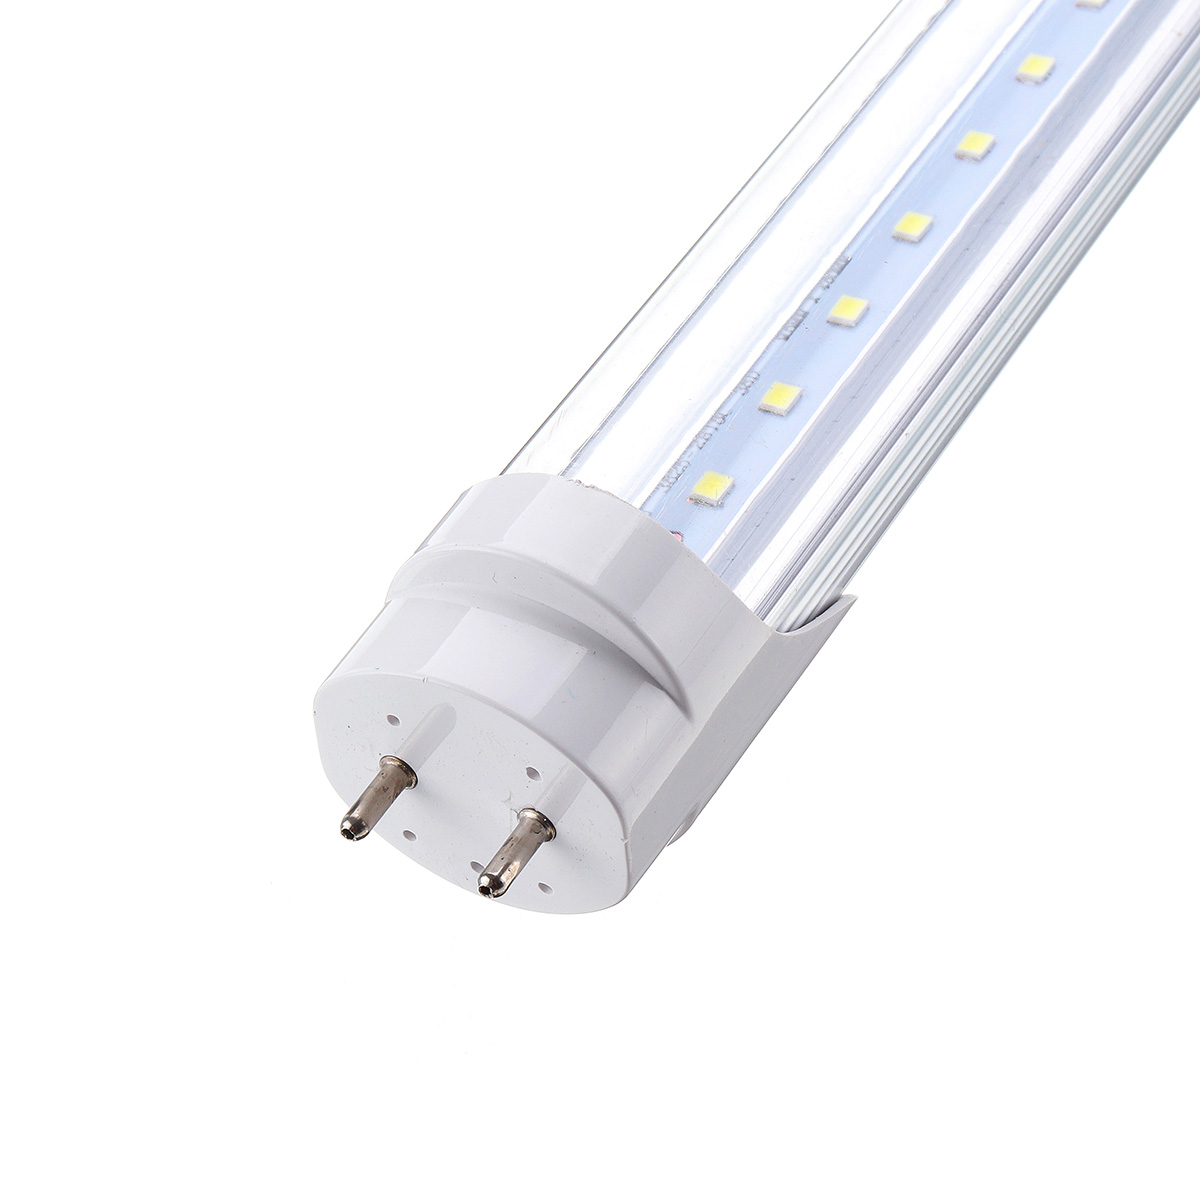 10PCS-50cm-T8-G13-8W-SMD2835-Fluorescent-Bulbs-36-LED-Tube-Light-for-Indoor-Home-Decor-AC85-265V-1477777-7